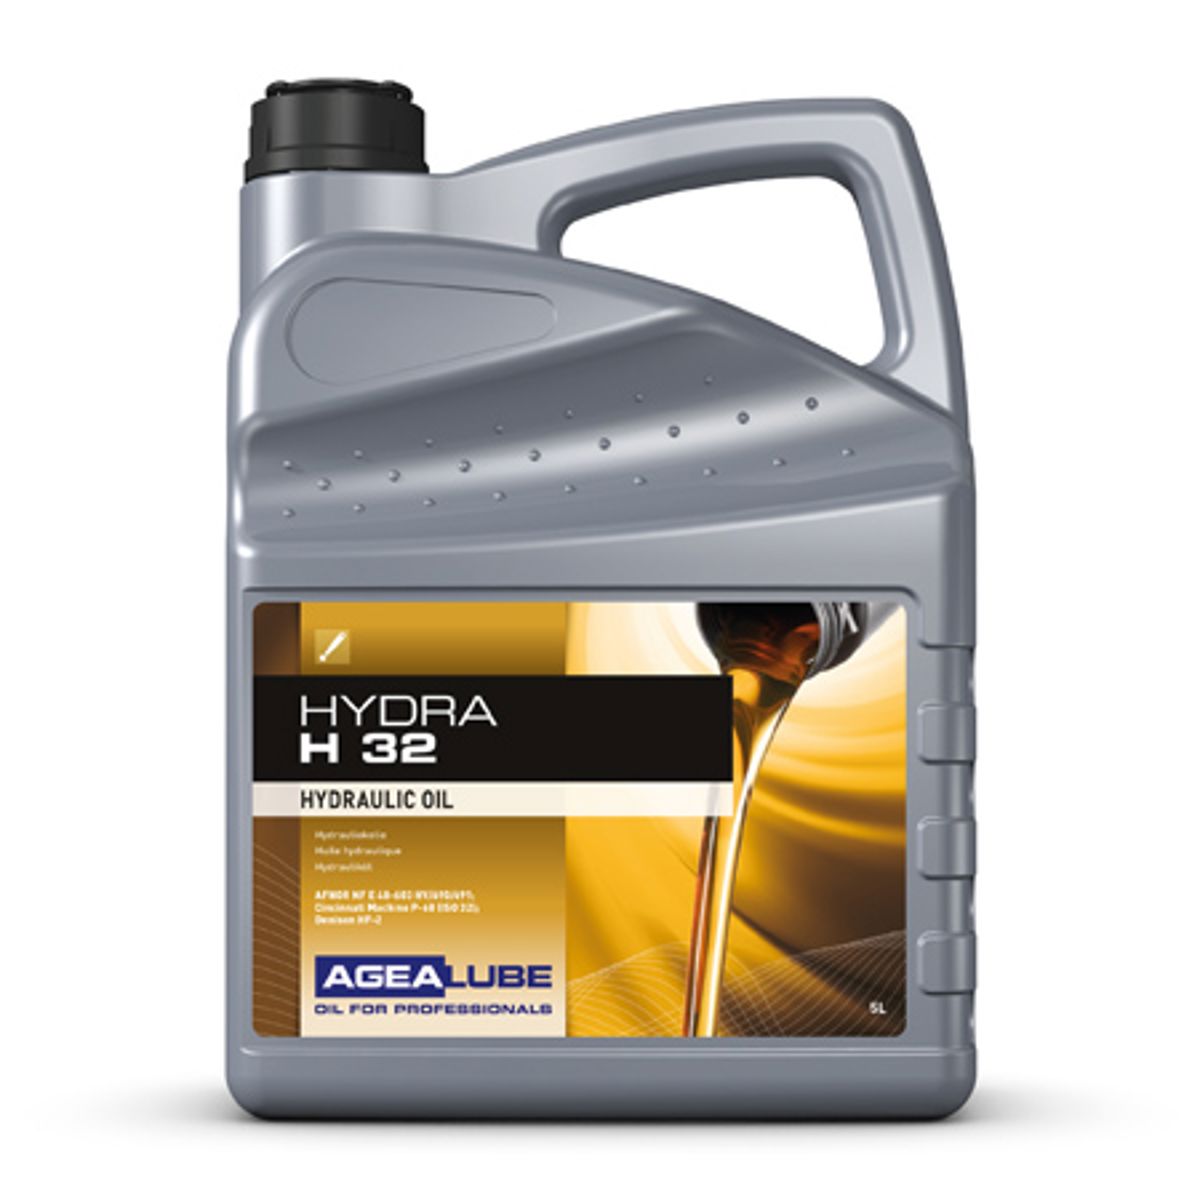 Agealube hydra h 32 hydraulische olie 5l